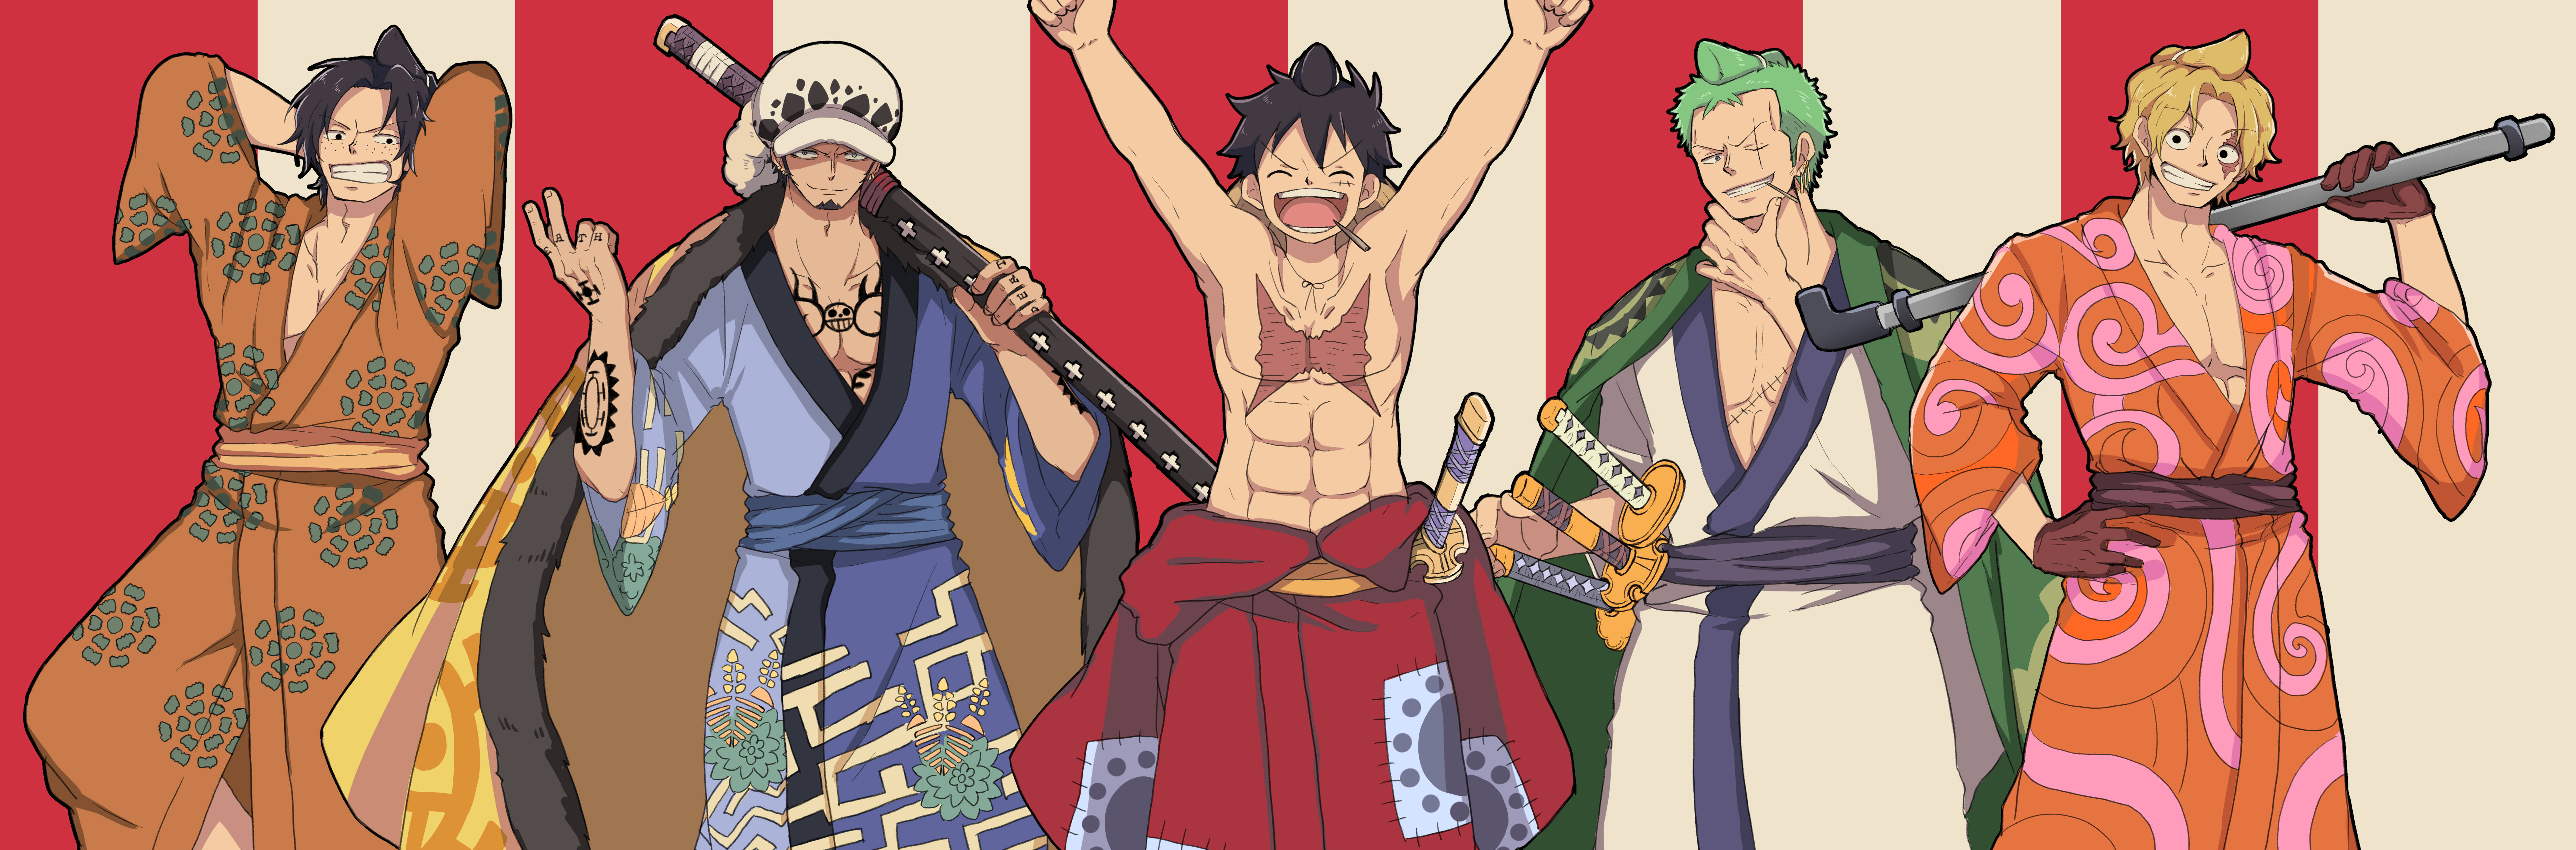 Hãy nhìn vào bức tranh One Piece Wano Poster Wallpaper, bạn sẽ thấy một thế giới hoàn toàn khác, thế giới của Wano. Hãy cảm nhận sức mạnh của nhóm hải tặc Mũ Rơm trong khi họ chạm trán với các samurai Wano nhưng không bỏ cuộc. Bức tranh này chắc chắn sẽ mang đến một trải nghiệm tuyệt vời cho các fan One Piece.